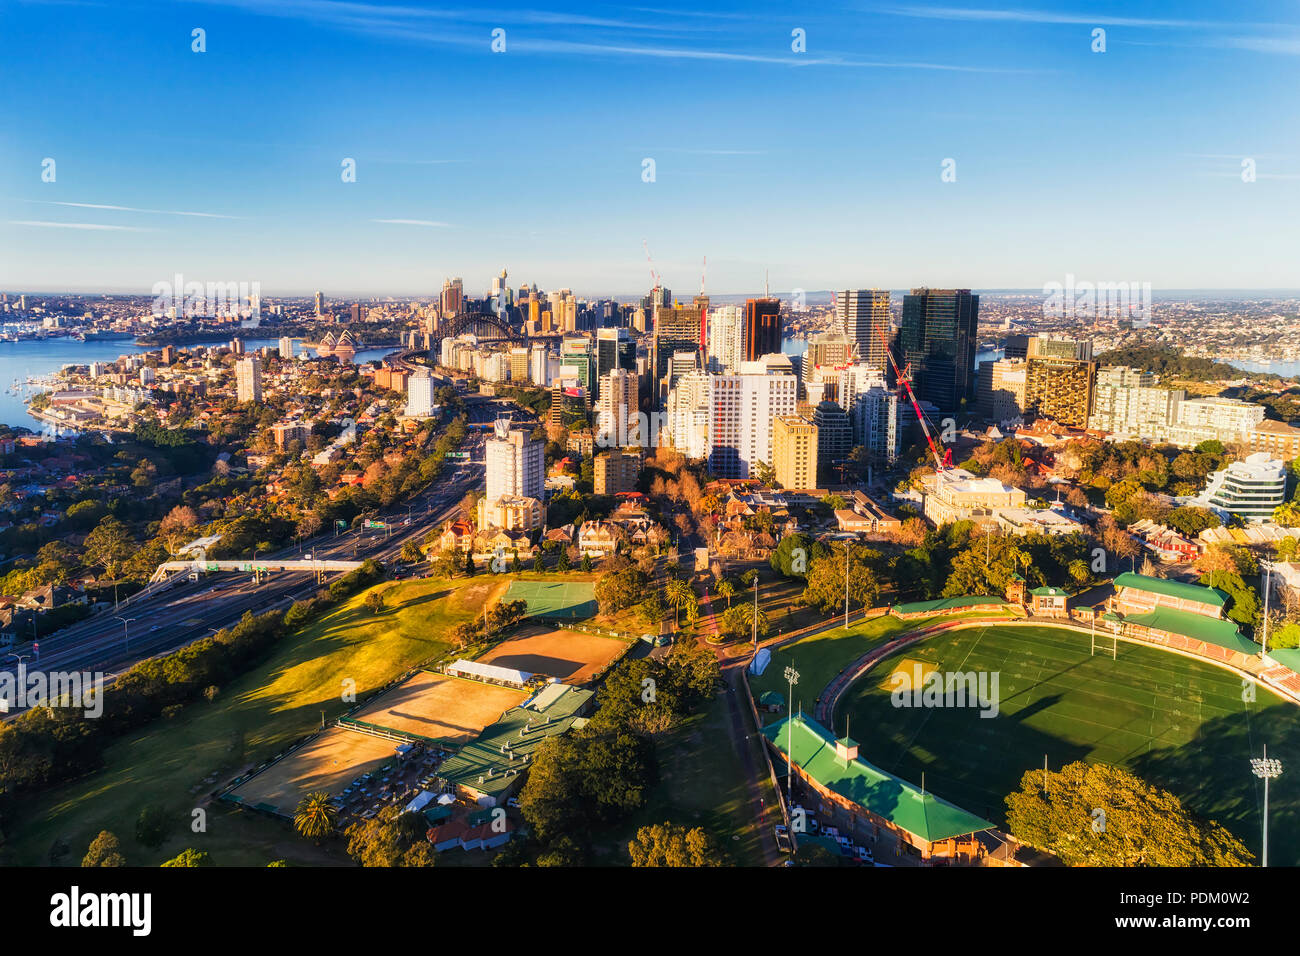 North Sydney vom St. Leonards Park und Oval zu entfernten Innenstadt über Sydney Hafen an einem sonnigen Morgen unter blauem Himmel - Luftbild Ansicht. Stockfoto